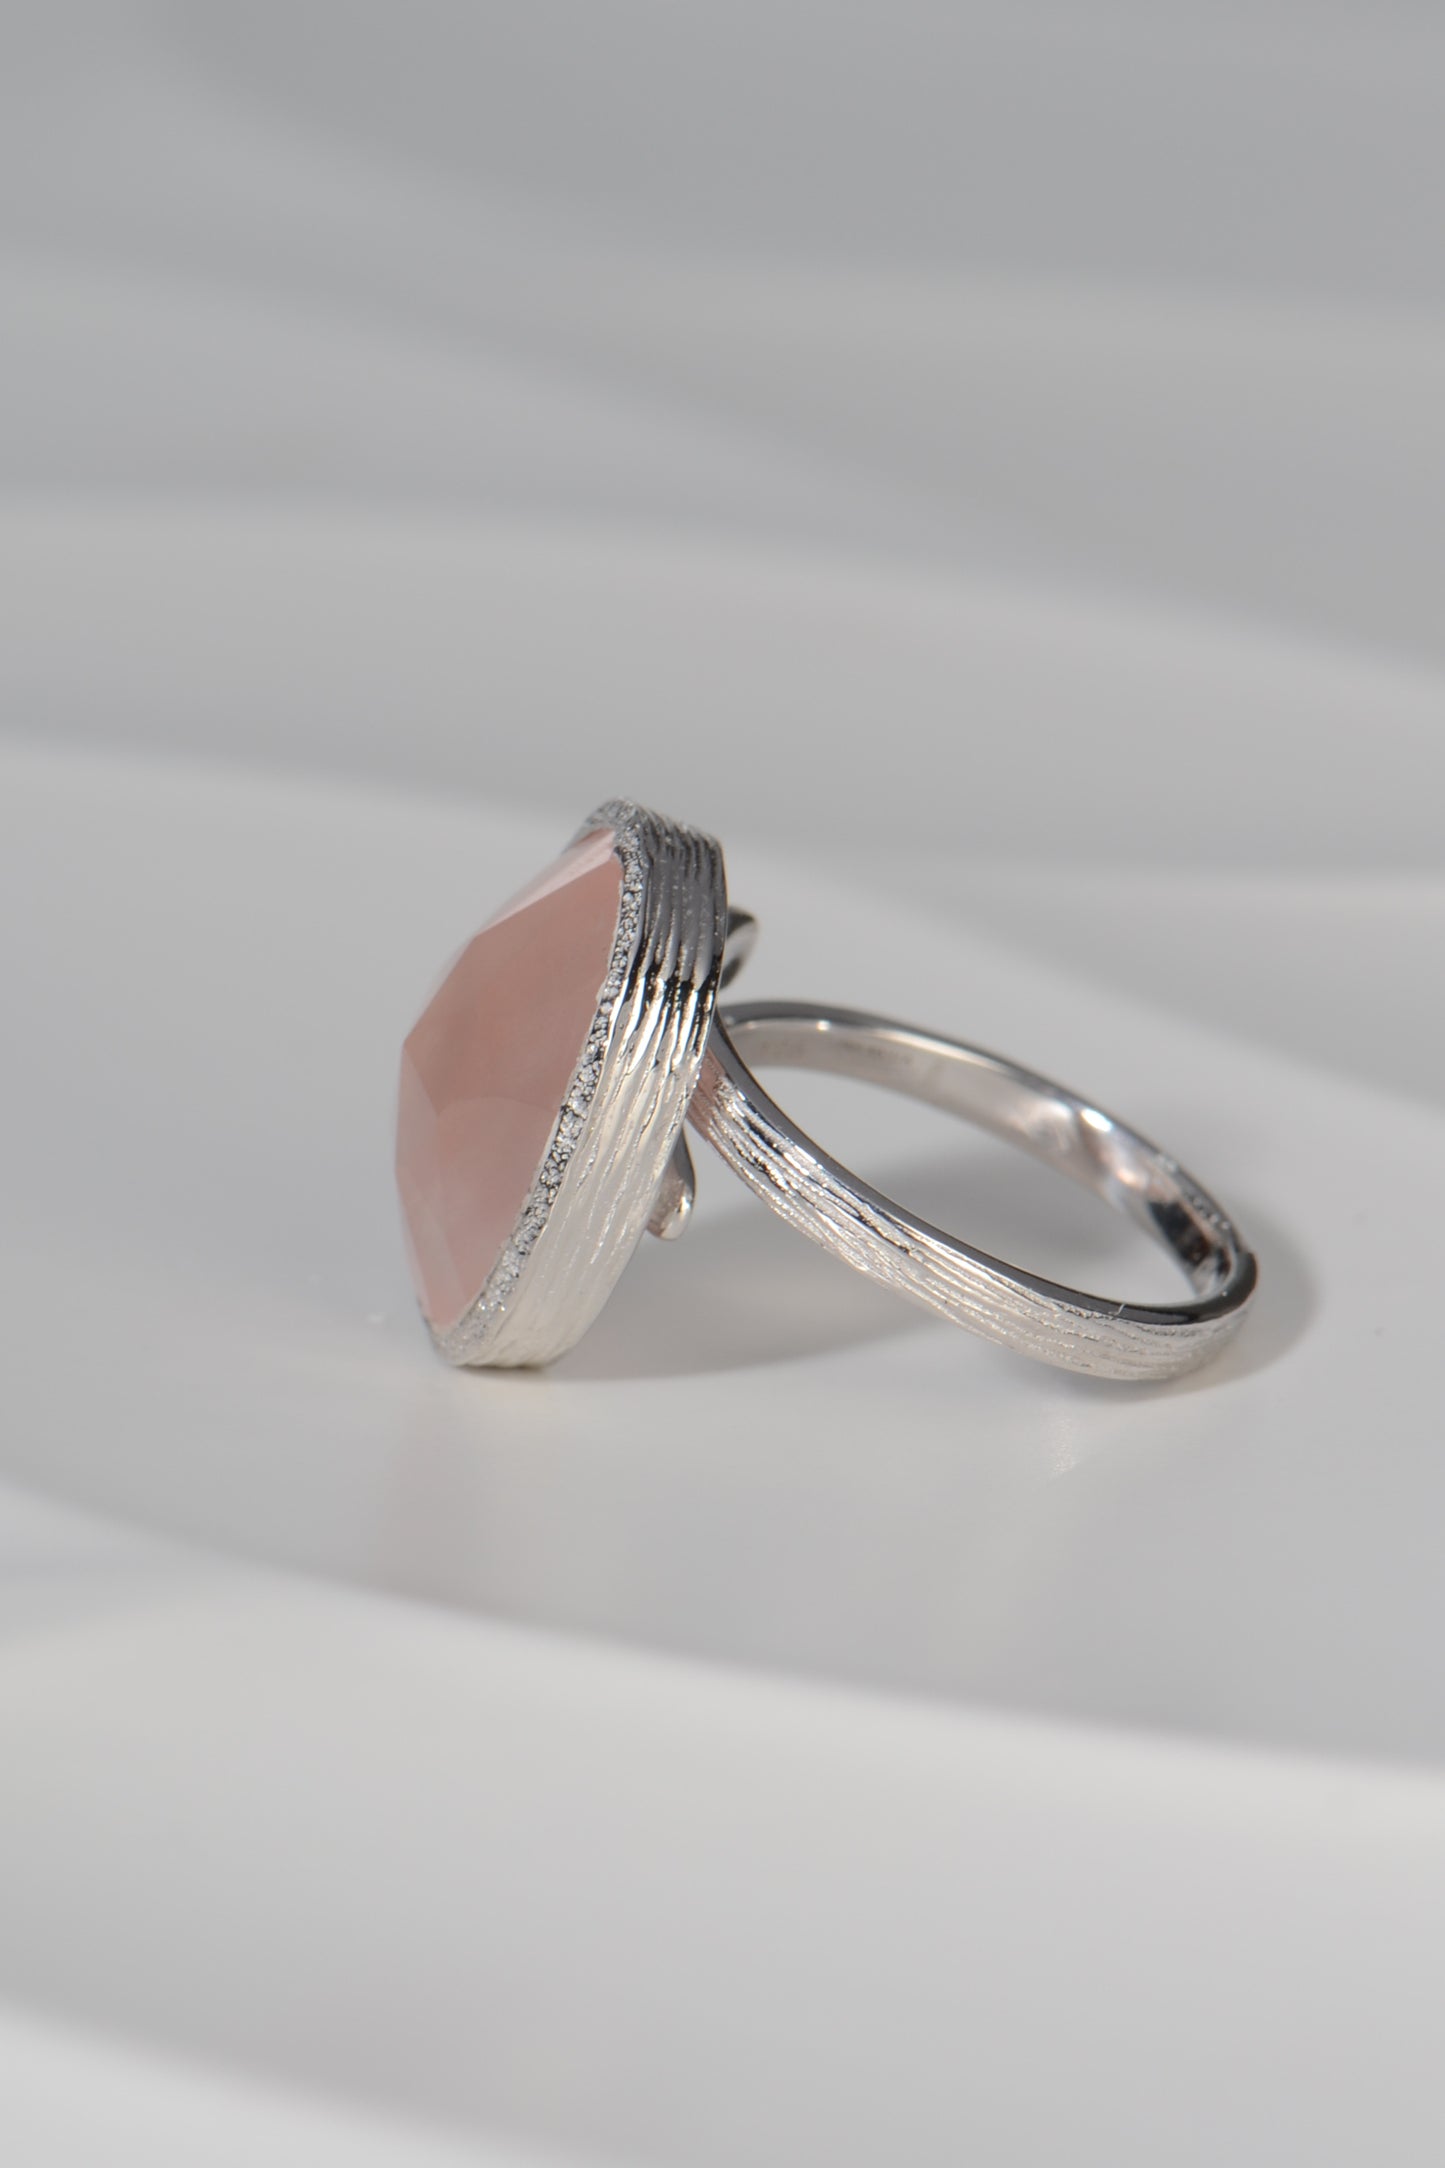 Designer Rose Quartz Silver Statement Ring